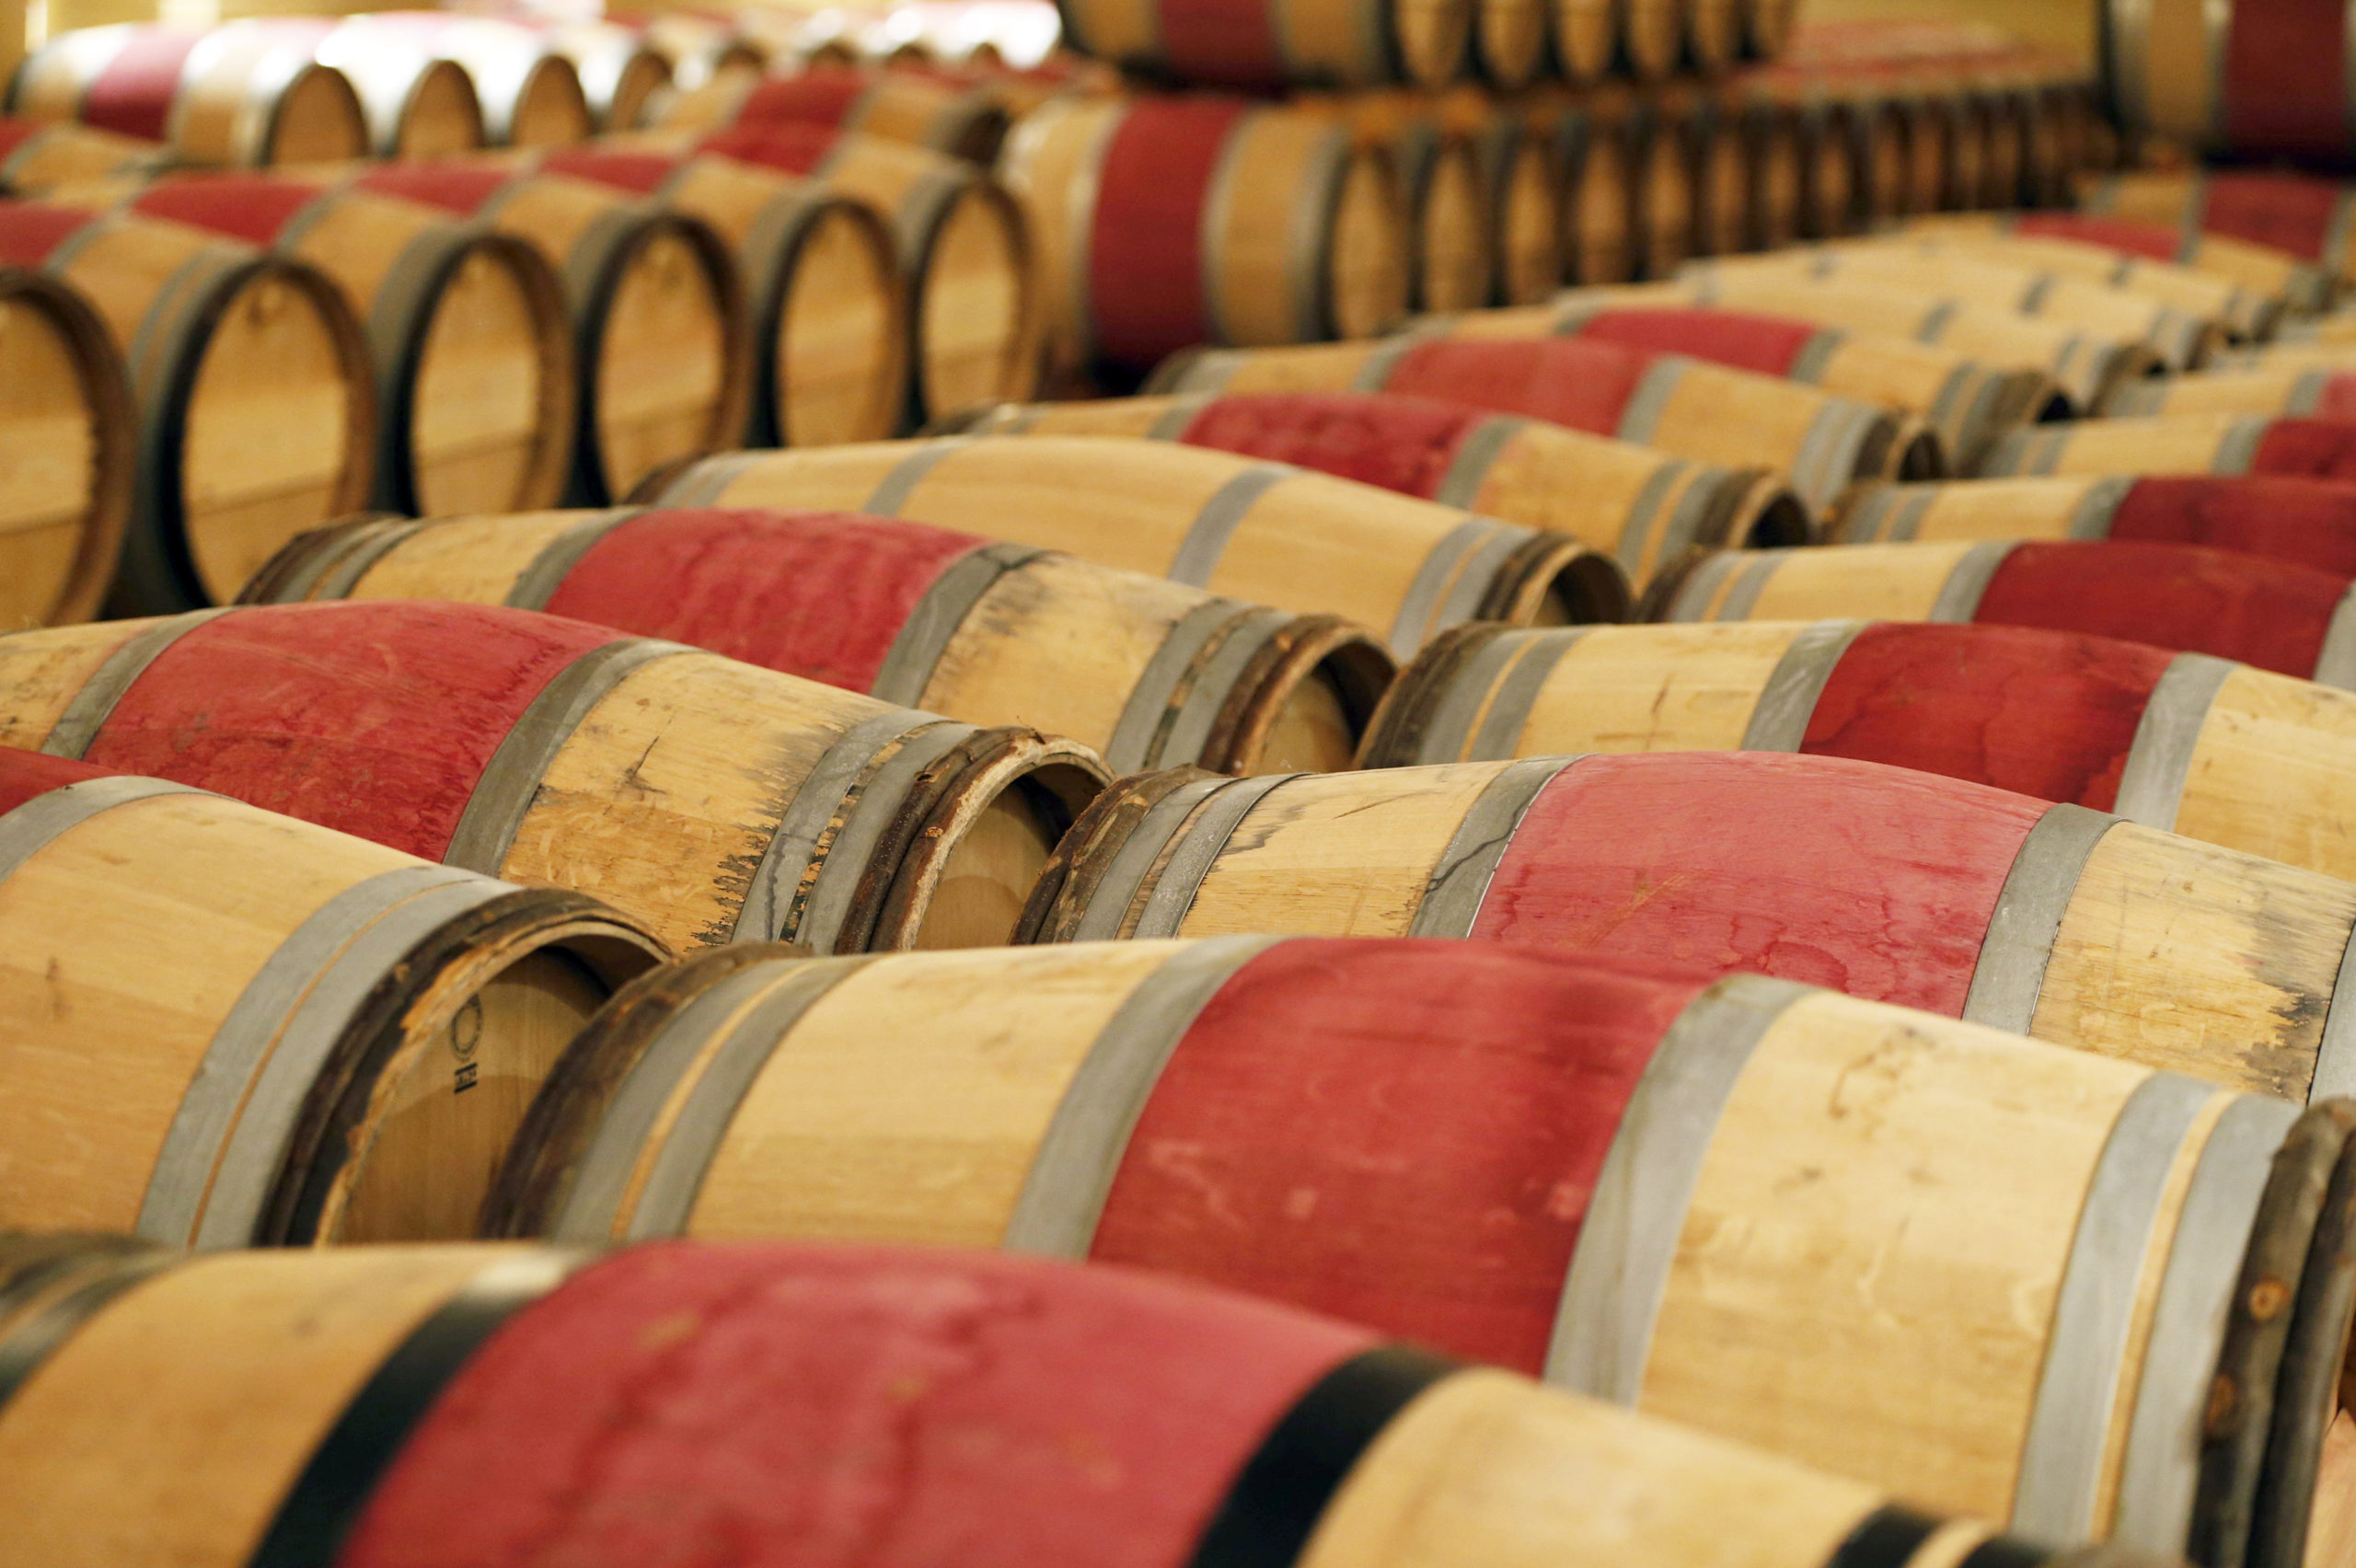 France: Chute de 13,9% des exportations de vins et spiritueux en 2020